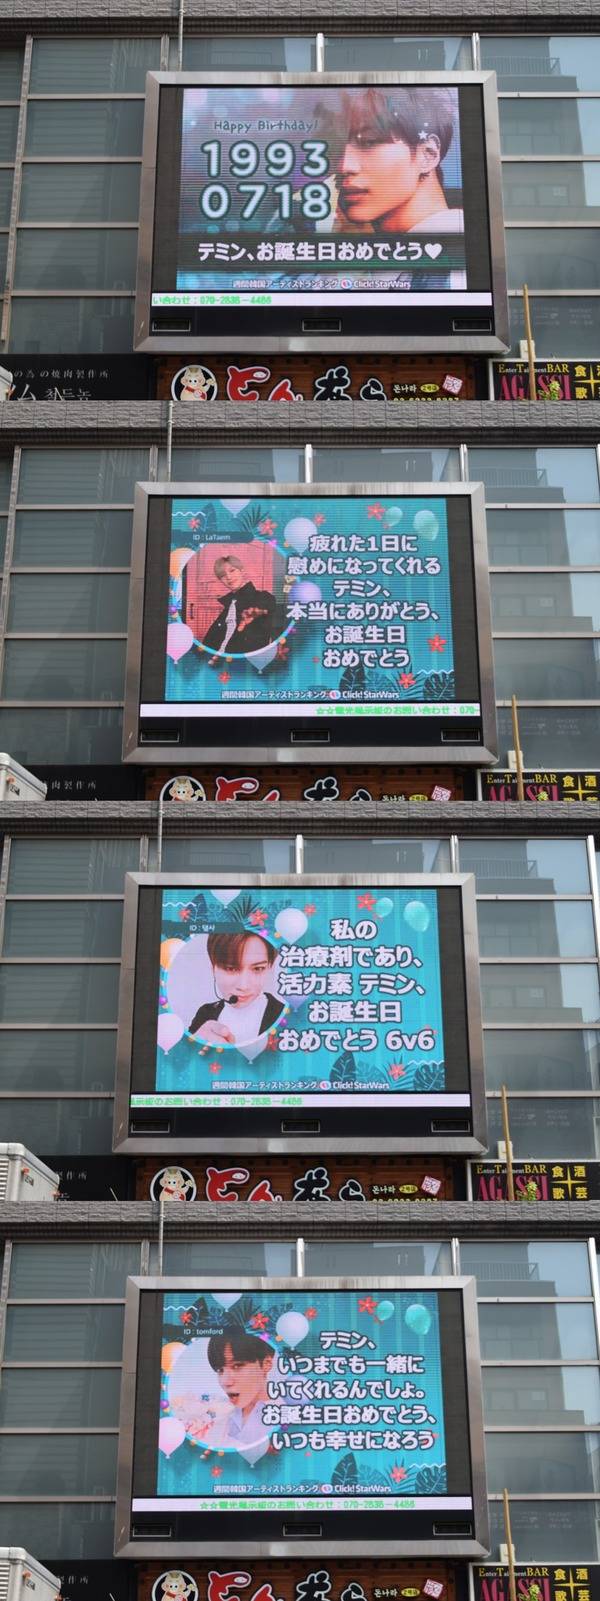 태민아, 생일 축하해 18일 그룹 샤이니 태민의 생일을 맞아 일본 도쿄에 위치한 전광판에서 축하 영상이 상영 중이다. /클릭스타워즈